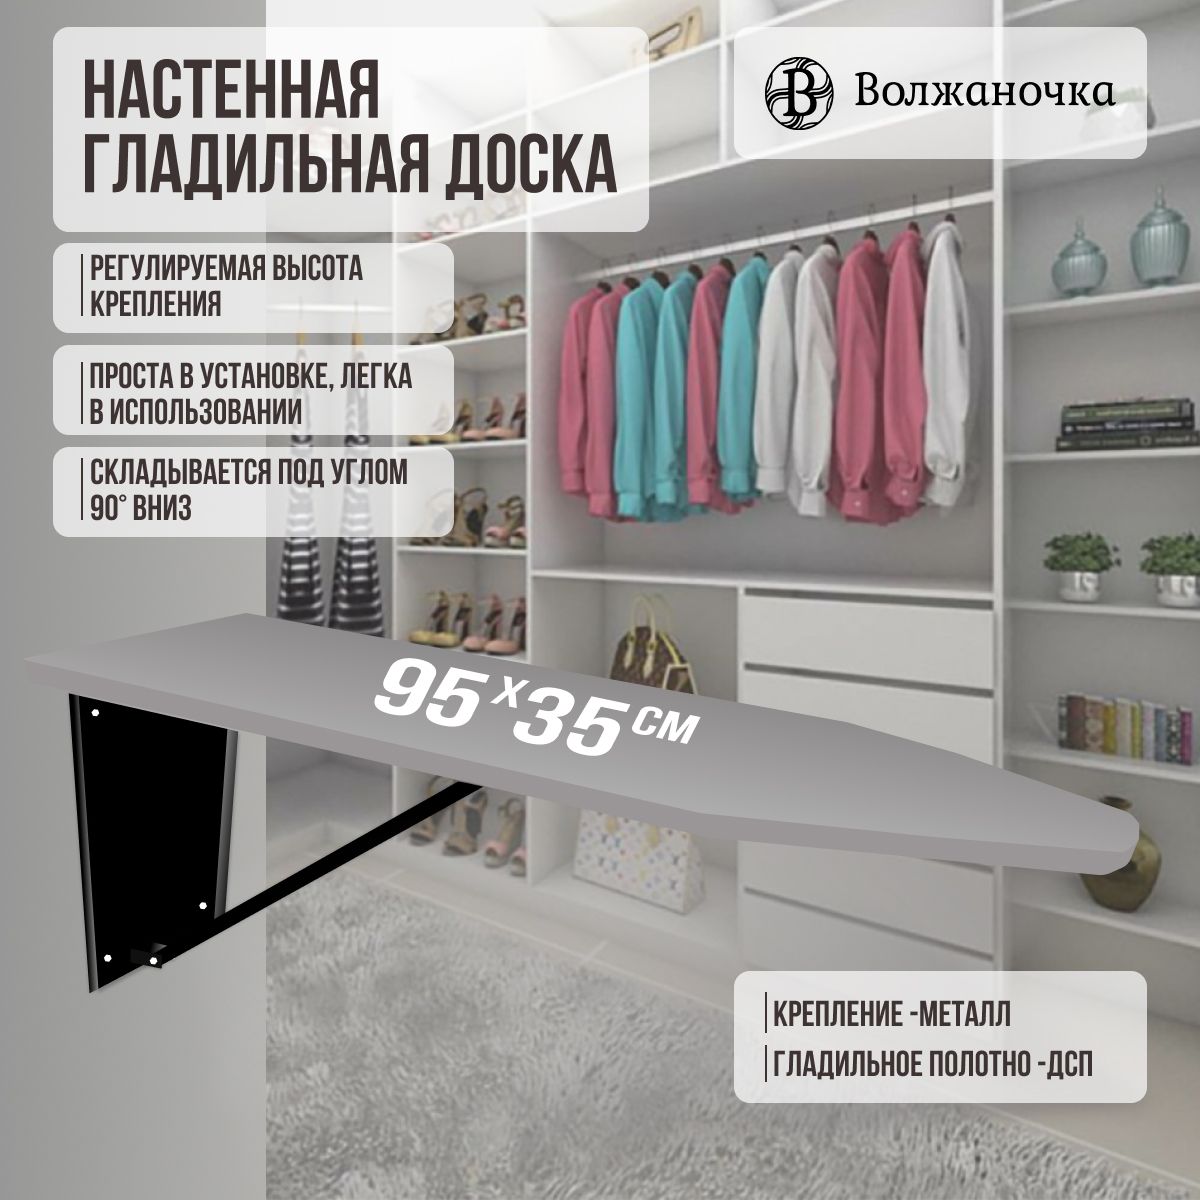 Гладильная доска встроенная в шкаф - удобство своими руками | steklorez69.ru | Дзен